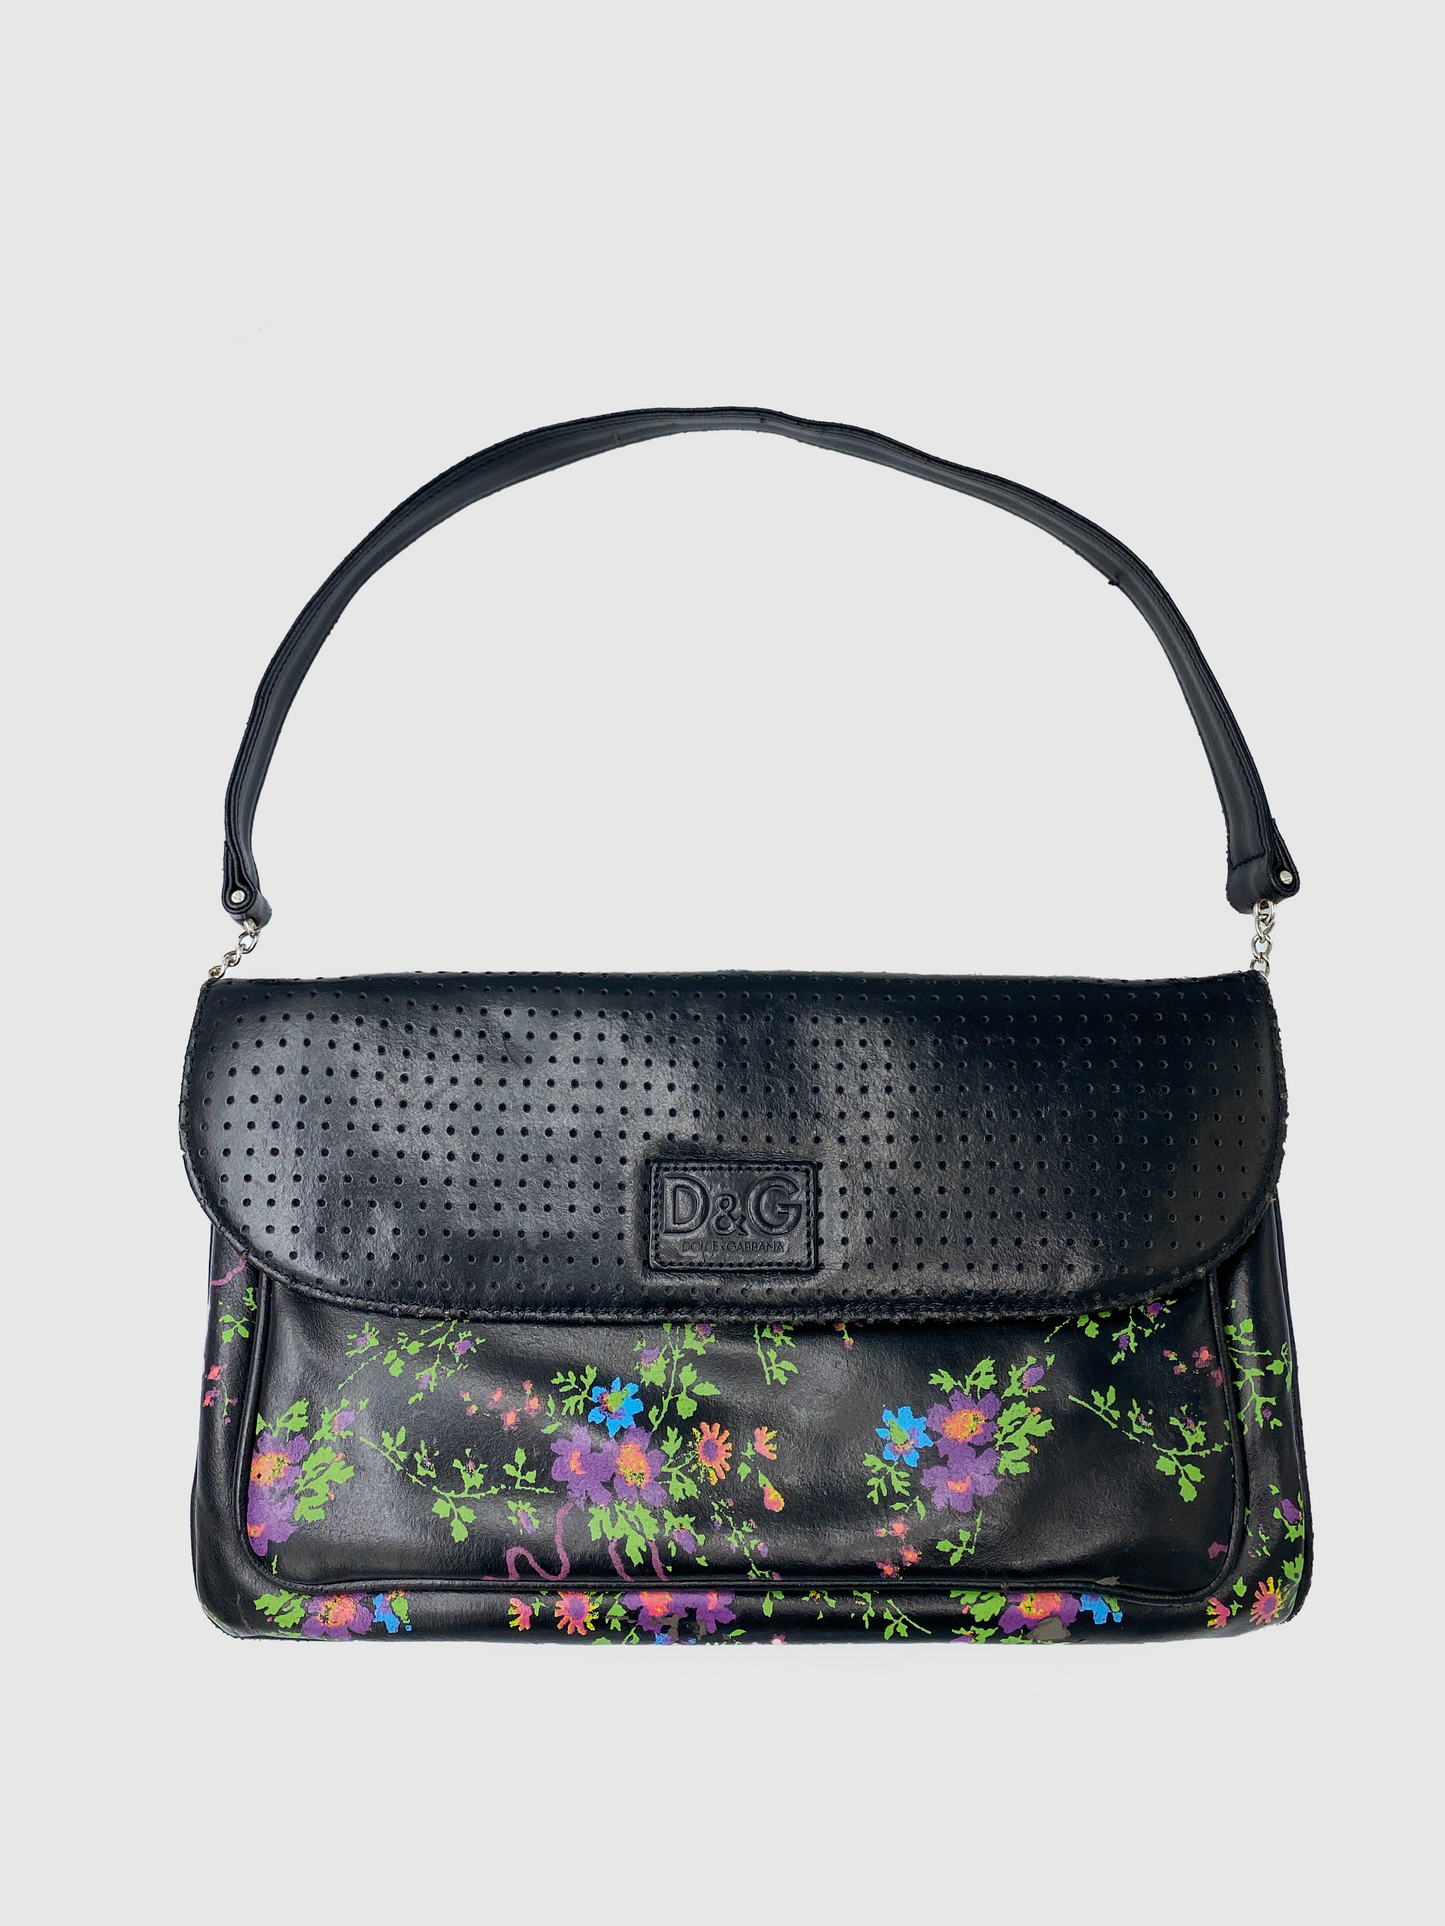 D&G Black with Flower Print Leather Shoulder Bag